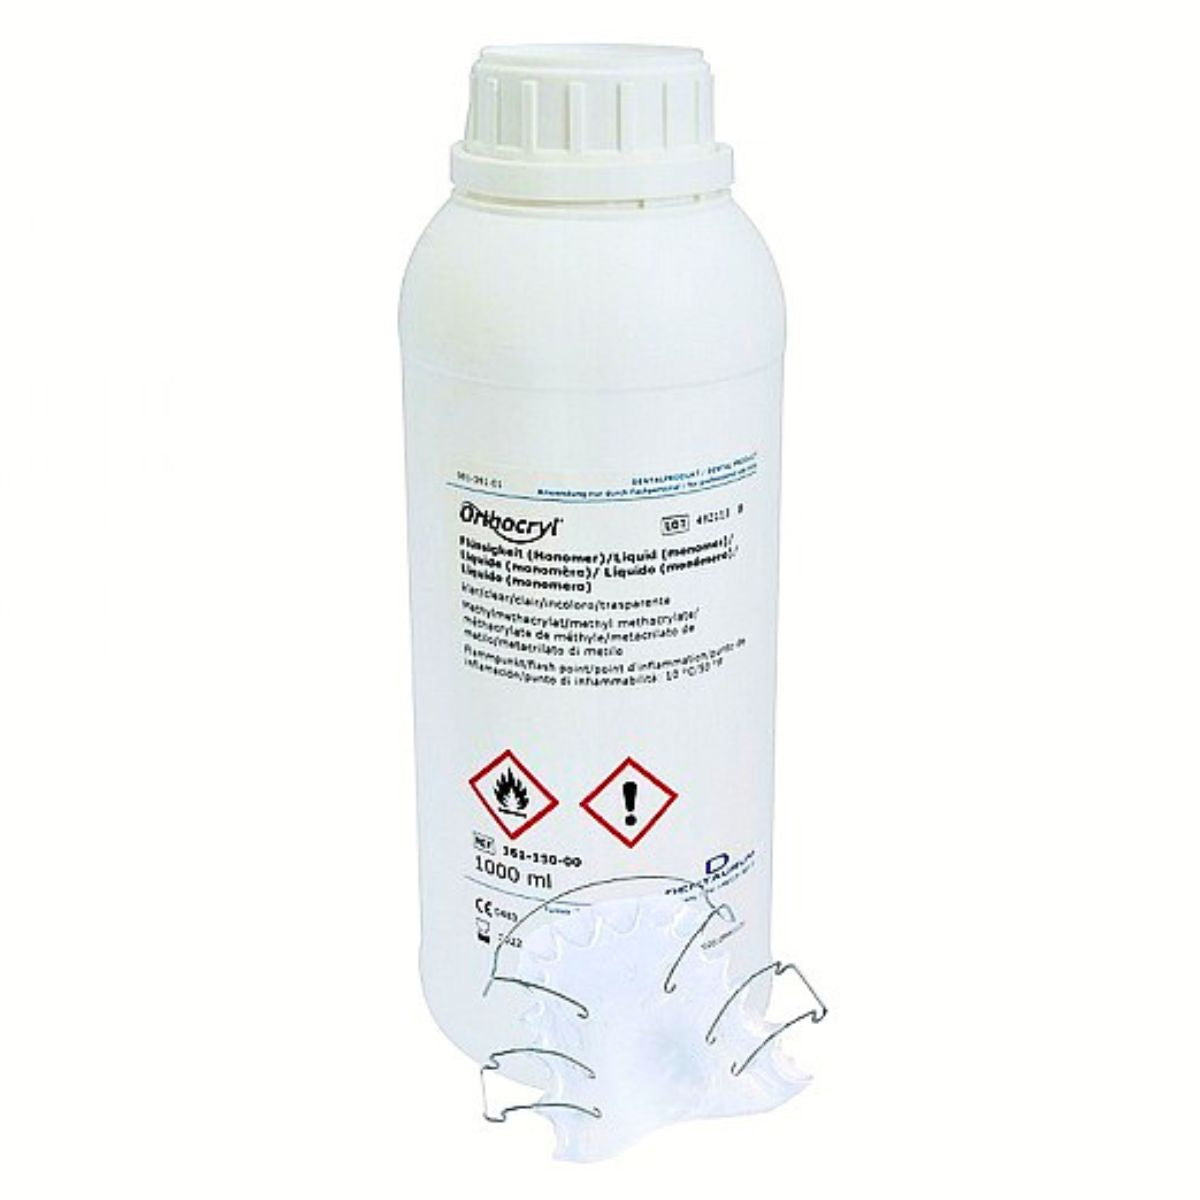 Dentaurum Orthocryl Clear Acrylic Liquid 1000ml